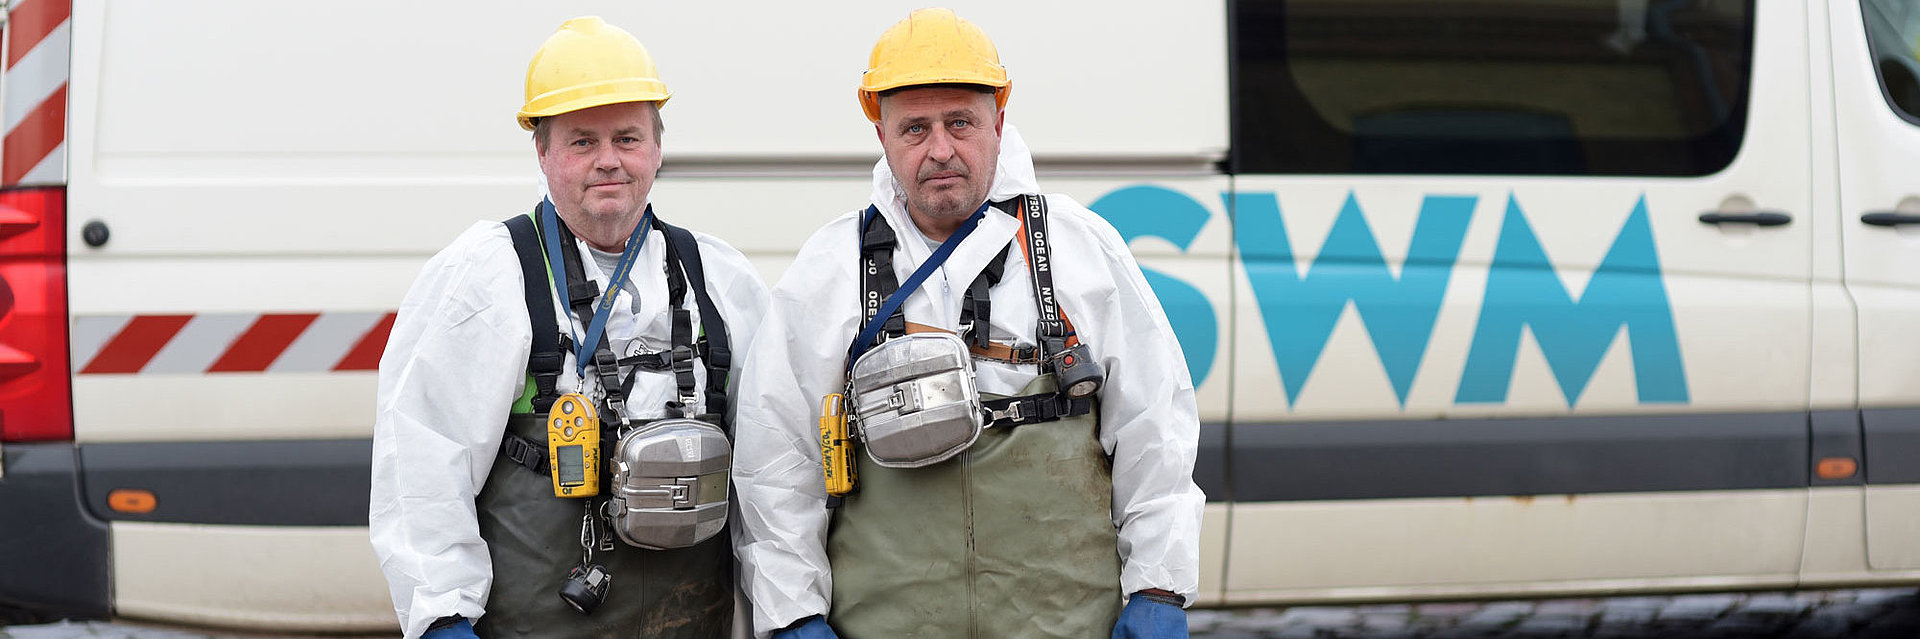 zwei SWM Mitarbeiter der Abwasserentsorgung stehen in Arbeitskleidung vor einem Firmenfahrzeug